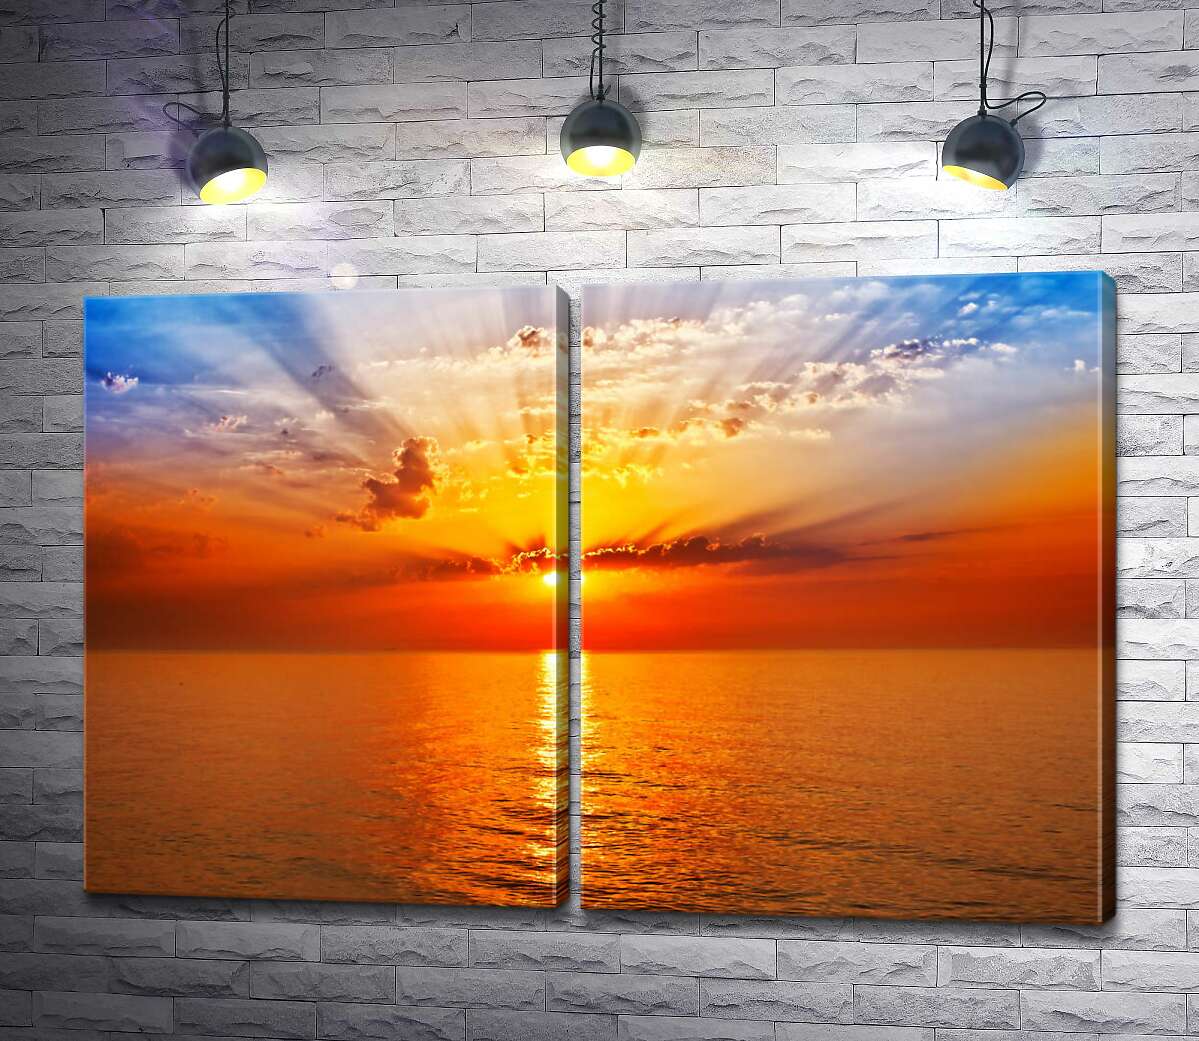 модульна картина Помаранчеве сонце утворює арку променів у небі над морем